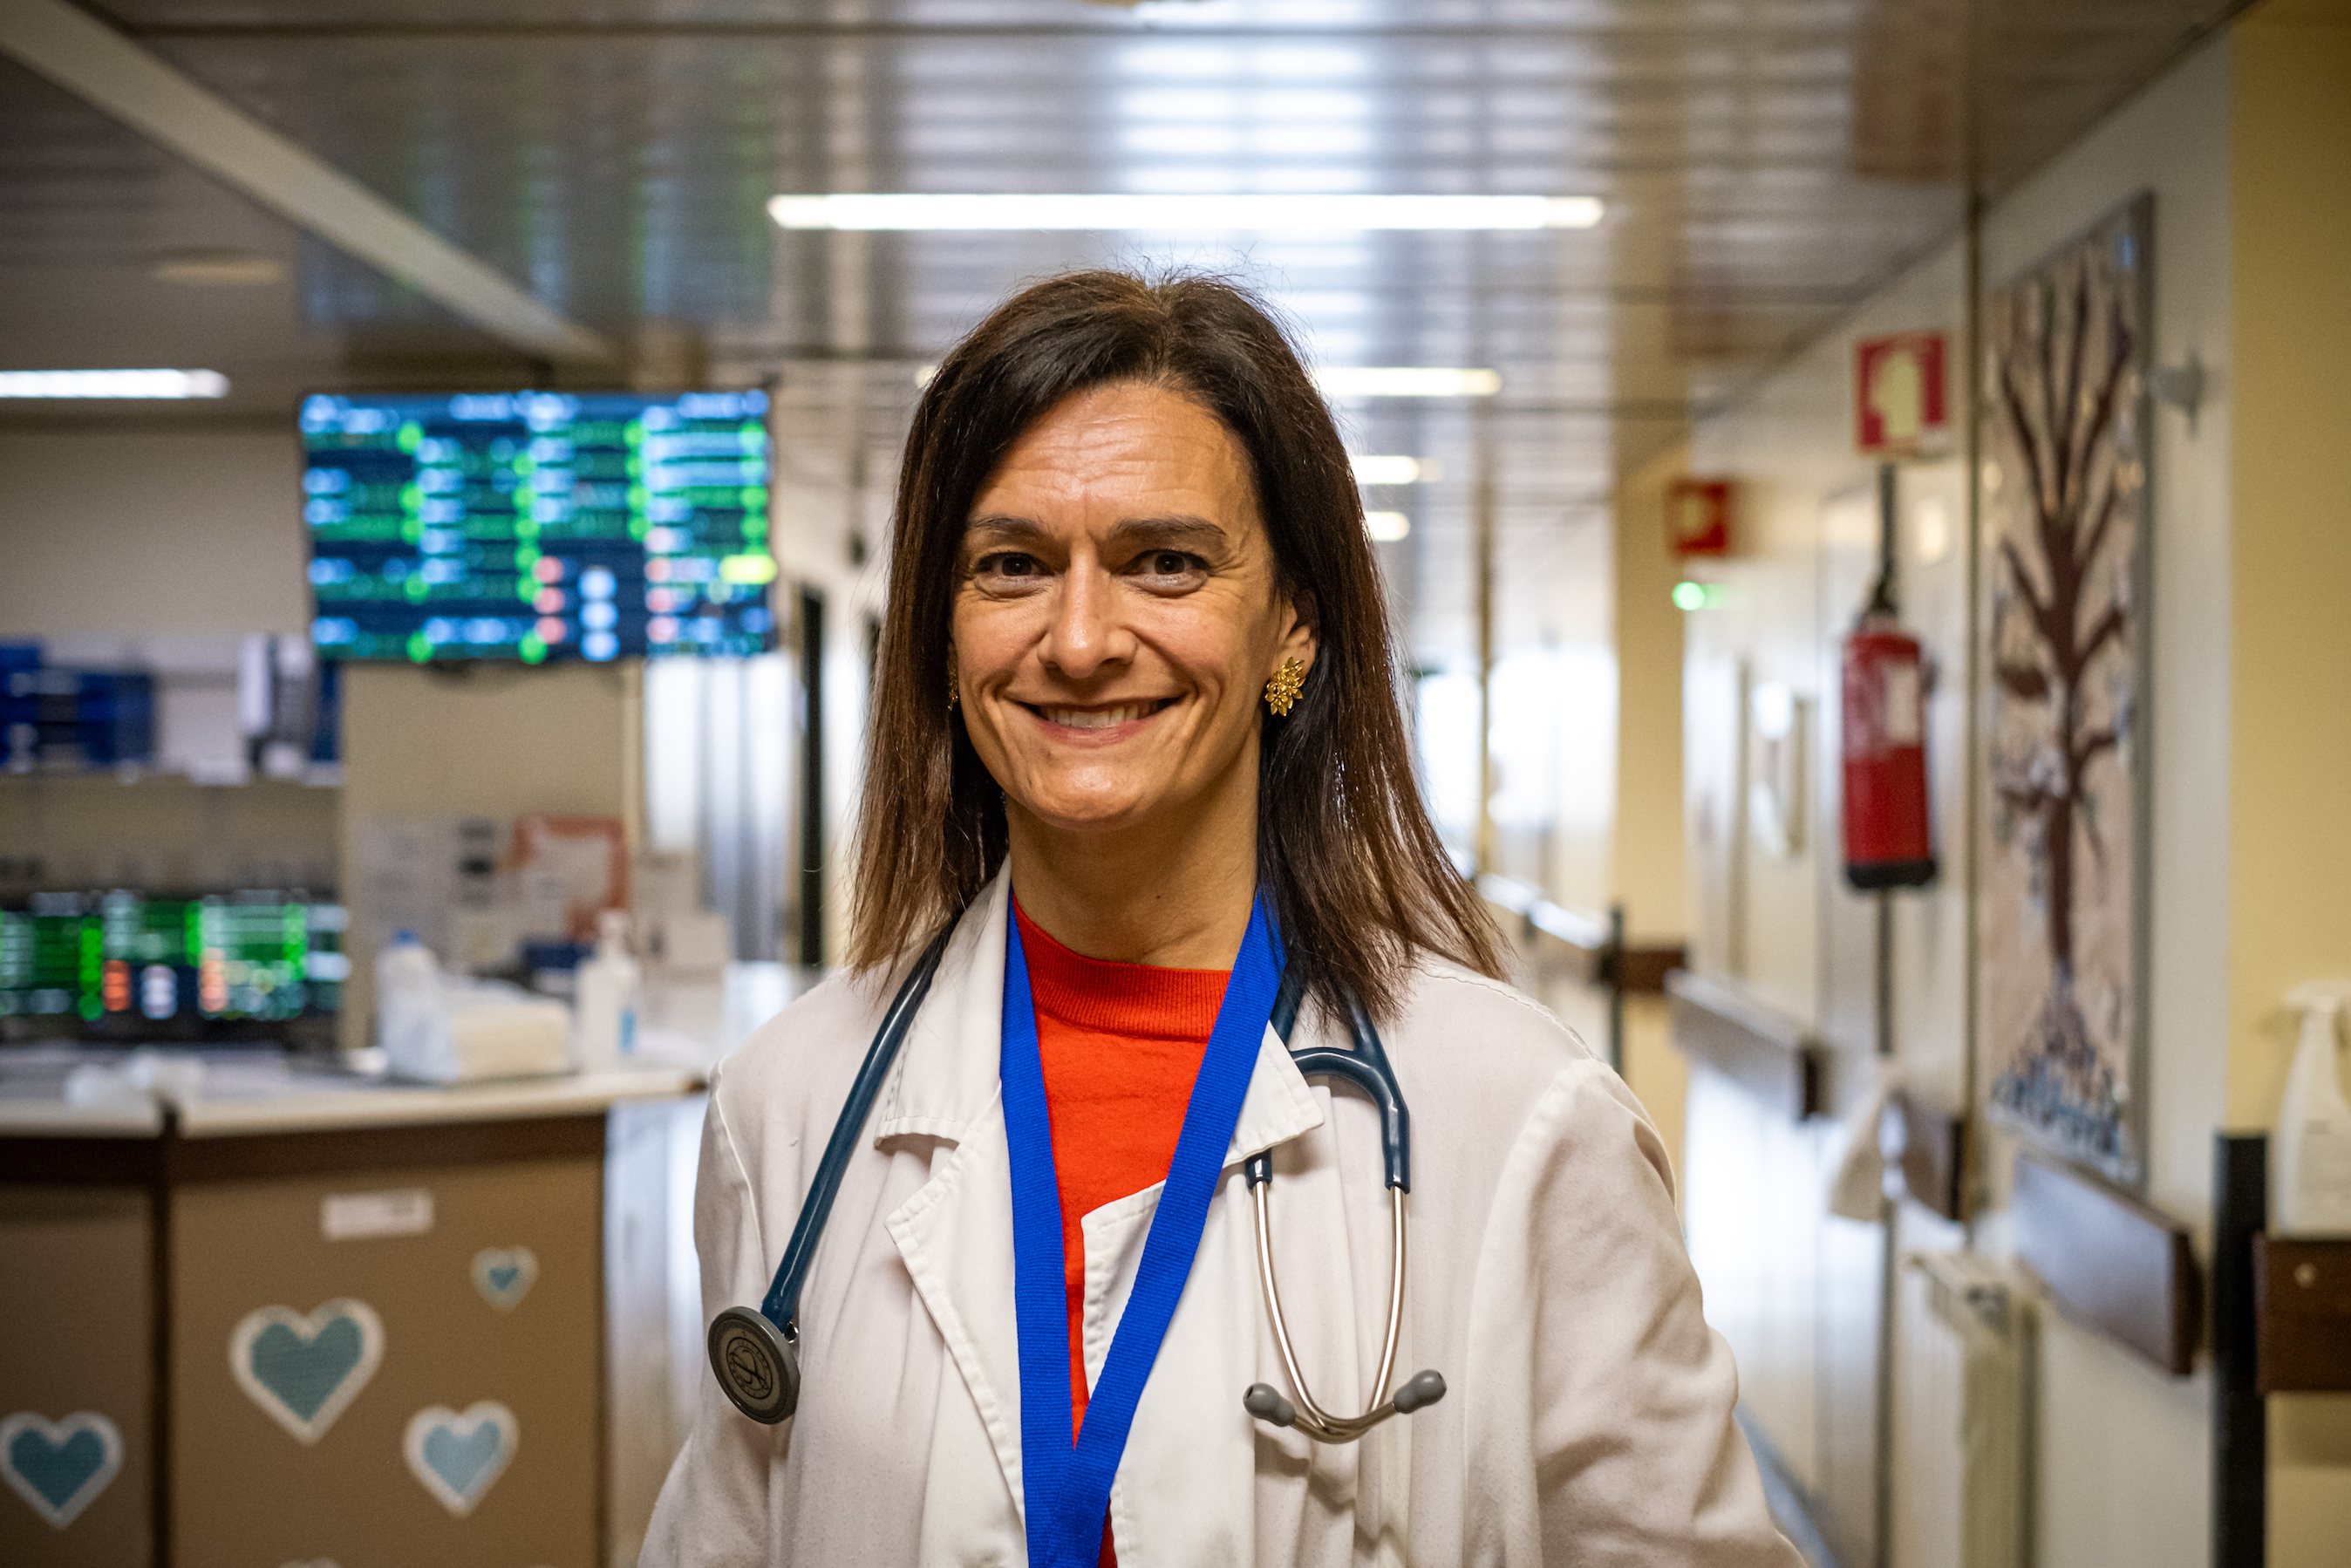 Cristina Gavina é diretora do Serviço de Cardiologia e do Serviço de Investigação da ULS de Matosinhos e professora associada da Faculdade de Medicina da Universidade do Porto